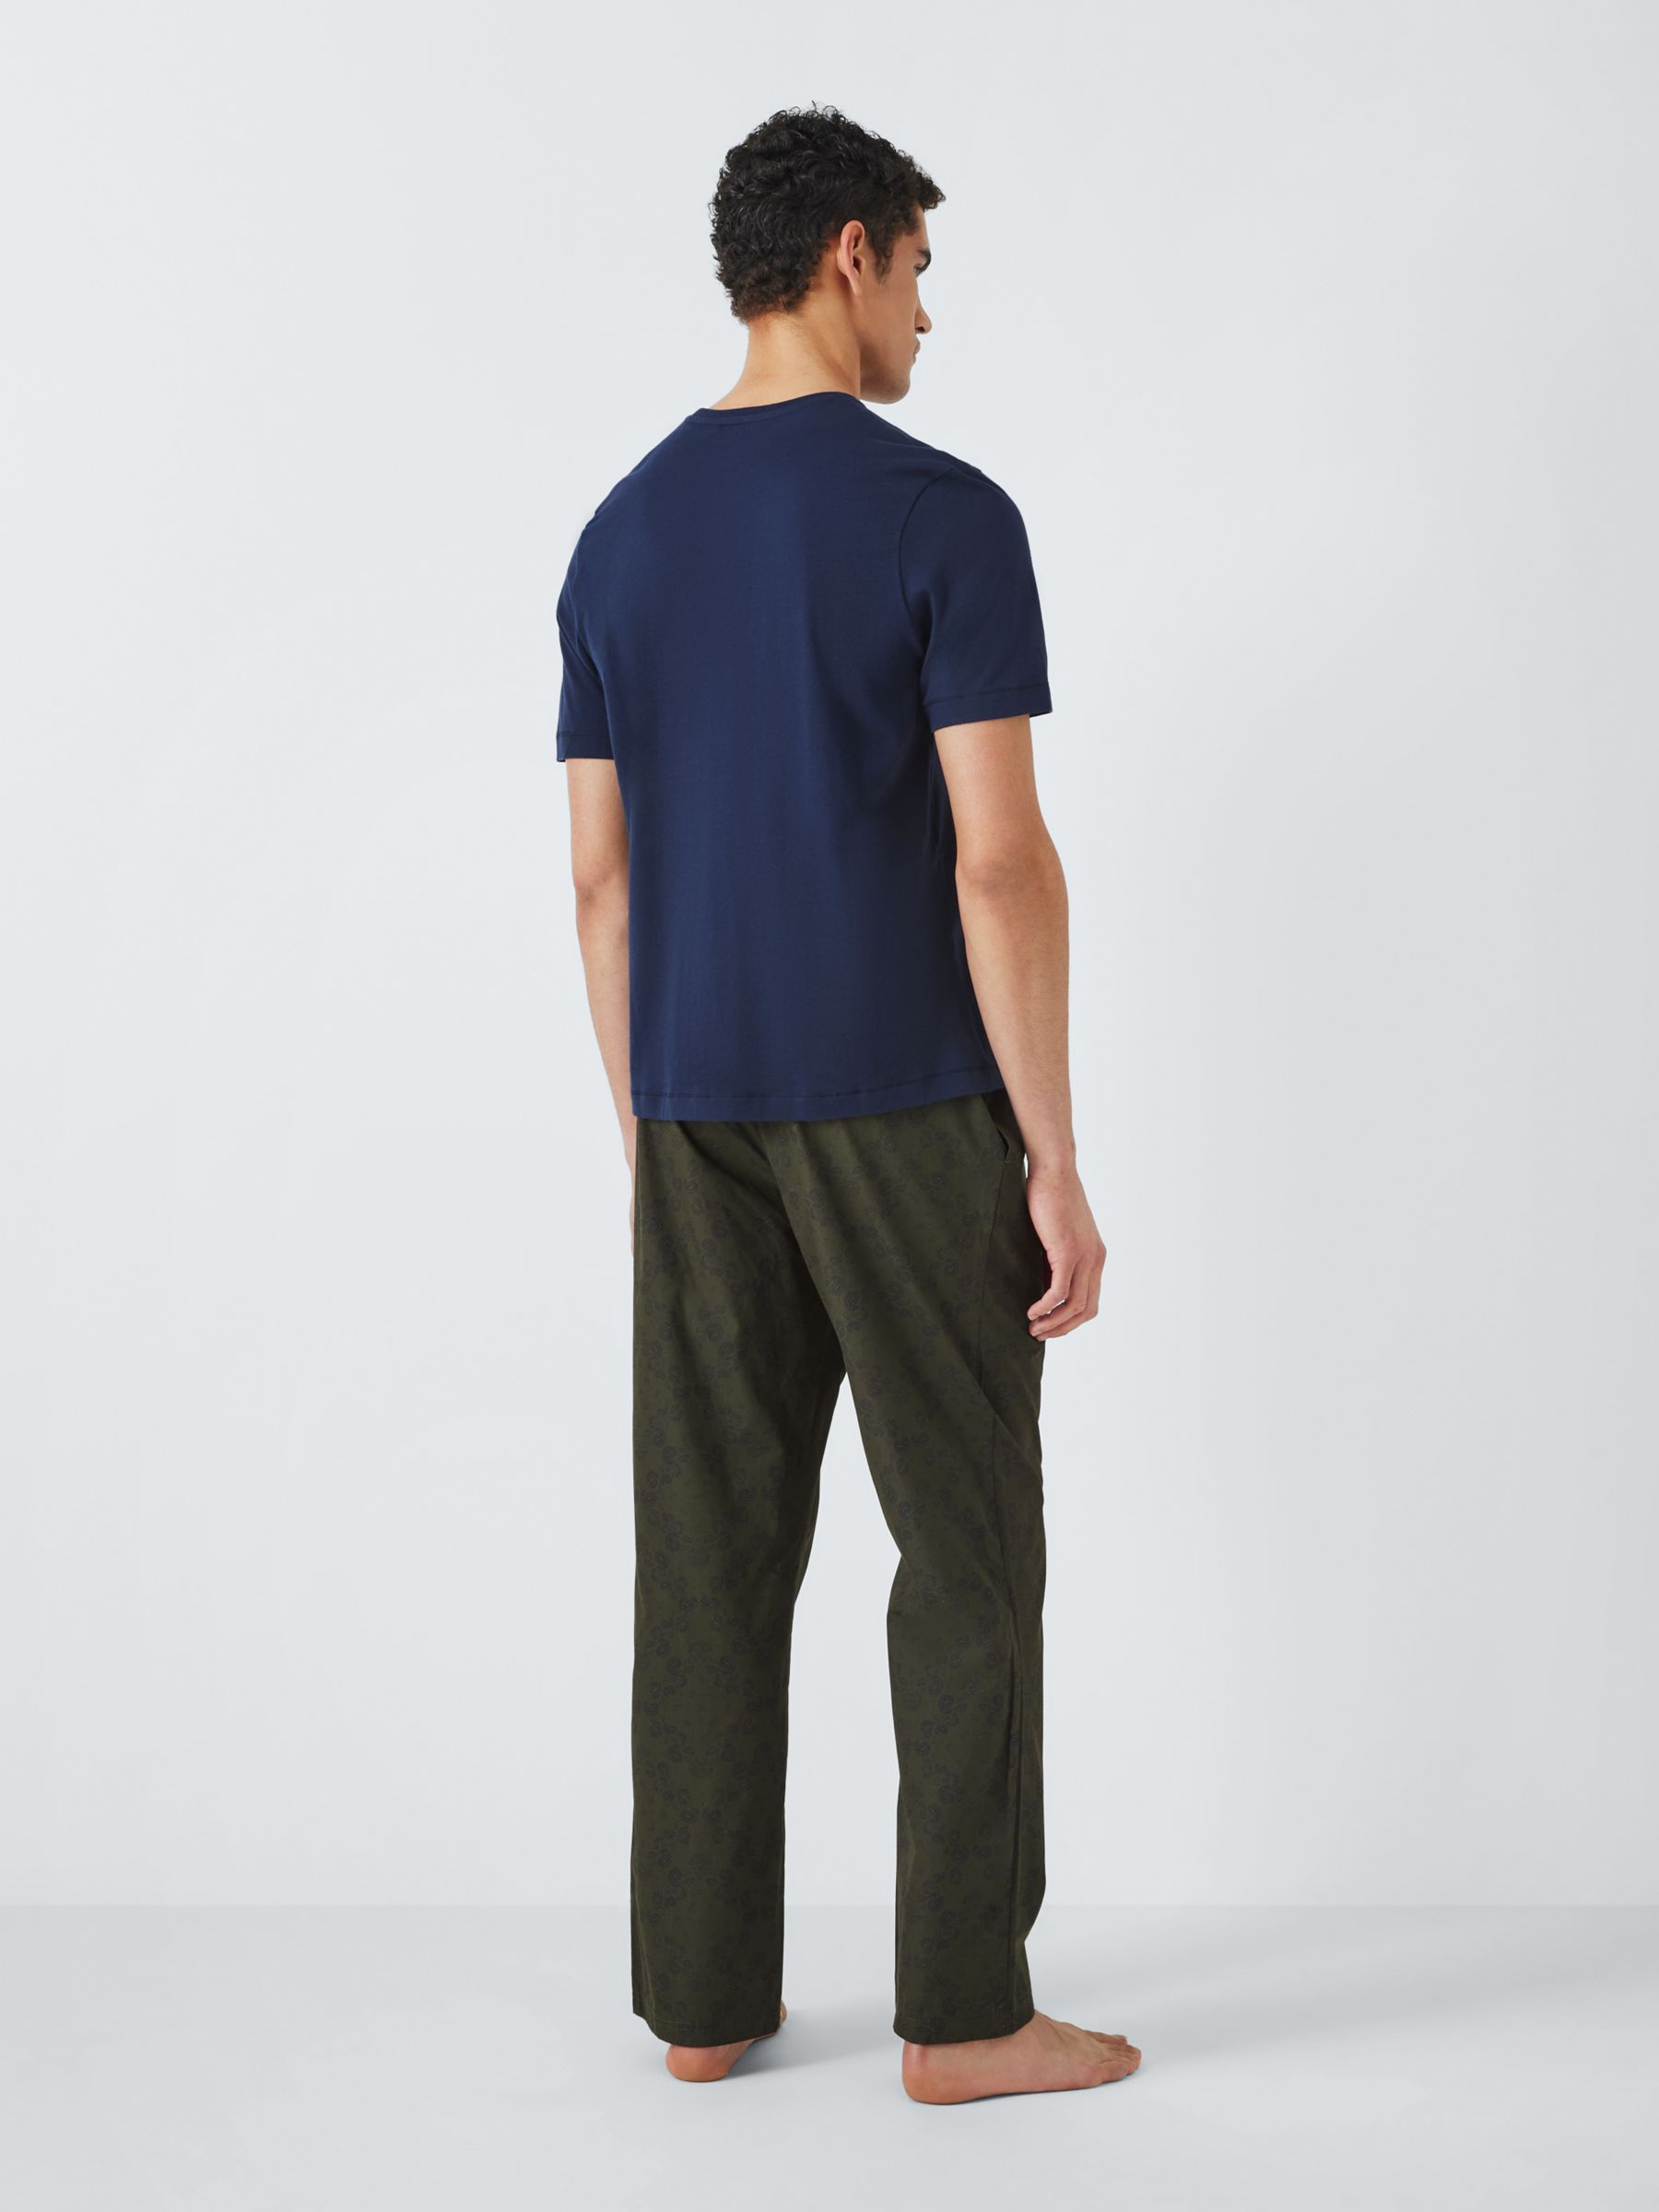 John Lewis Organic Cotton Printed Pyjama Set, Multi, XL